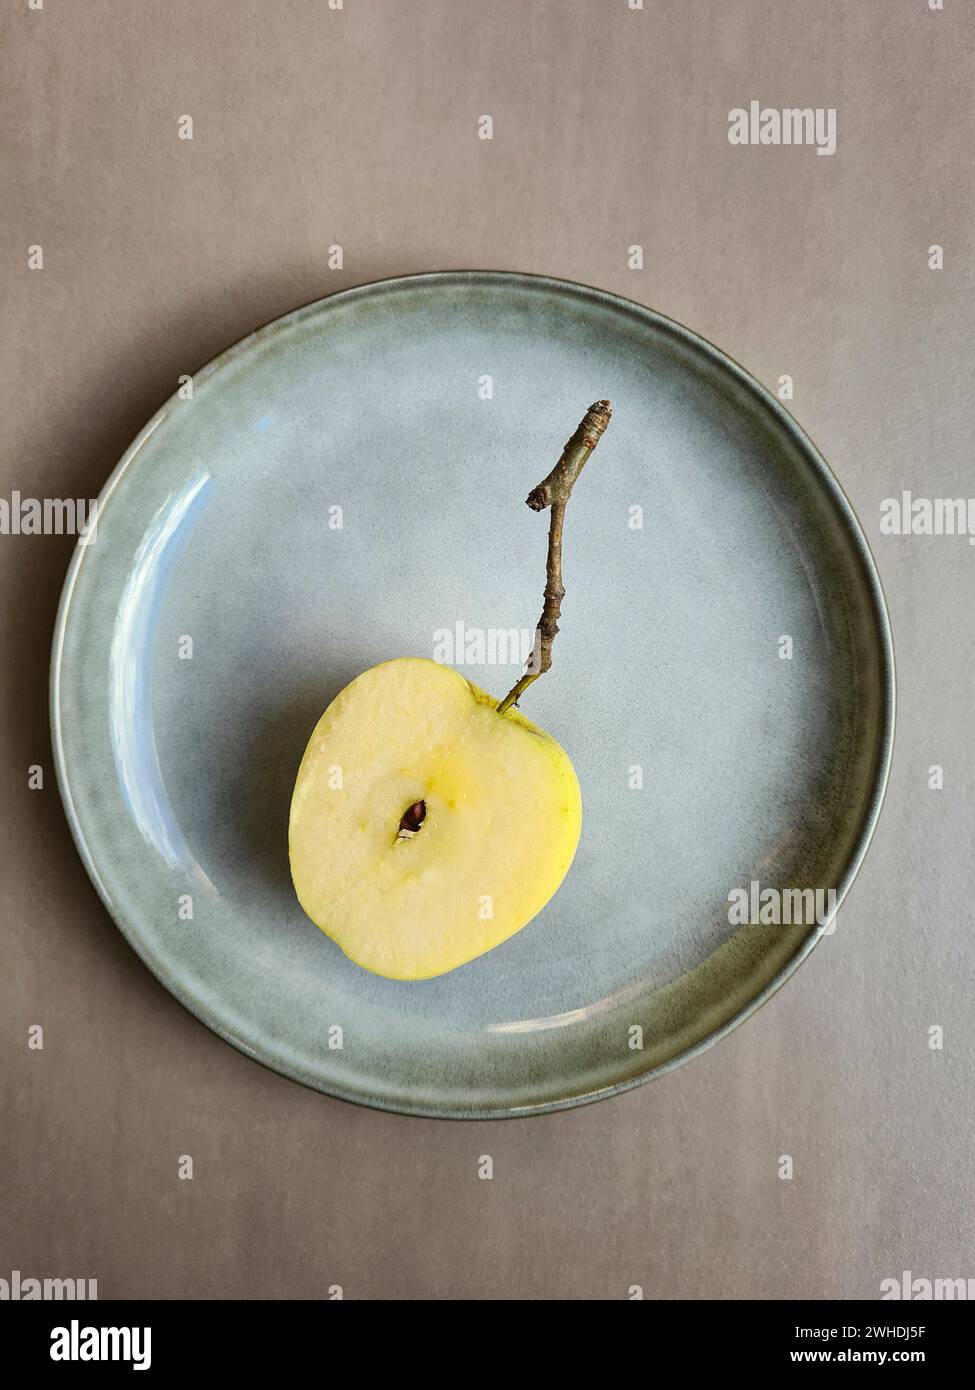 Ein frischer halbierter Apfel mit Kern liegt auf einem pastellfarbenen Teller und hellgrauem Hintergrund Stockfoto